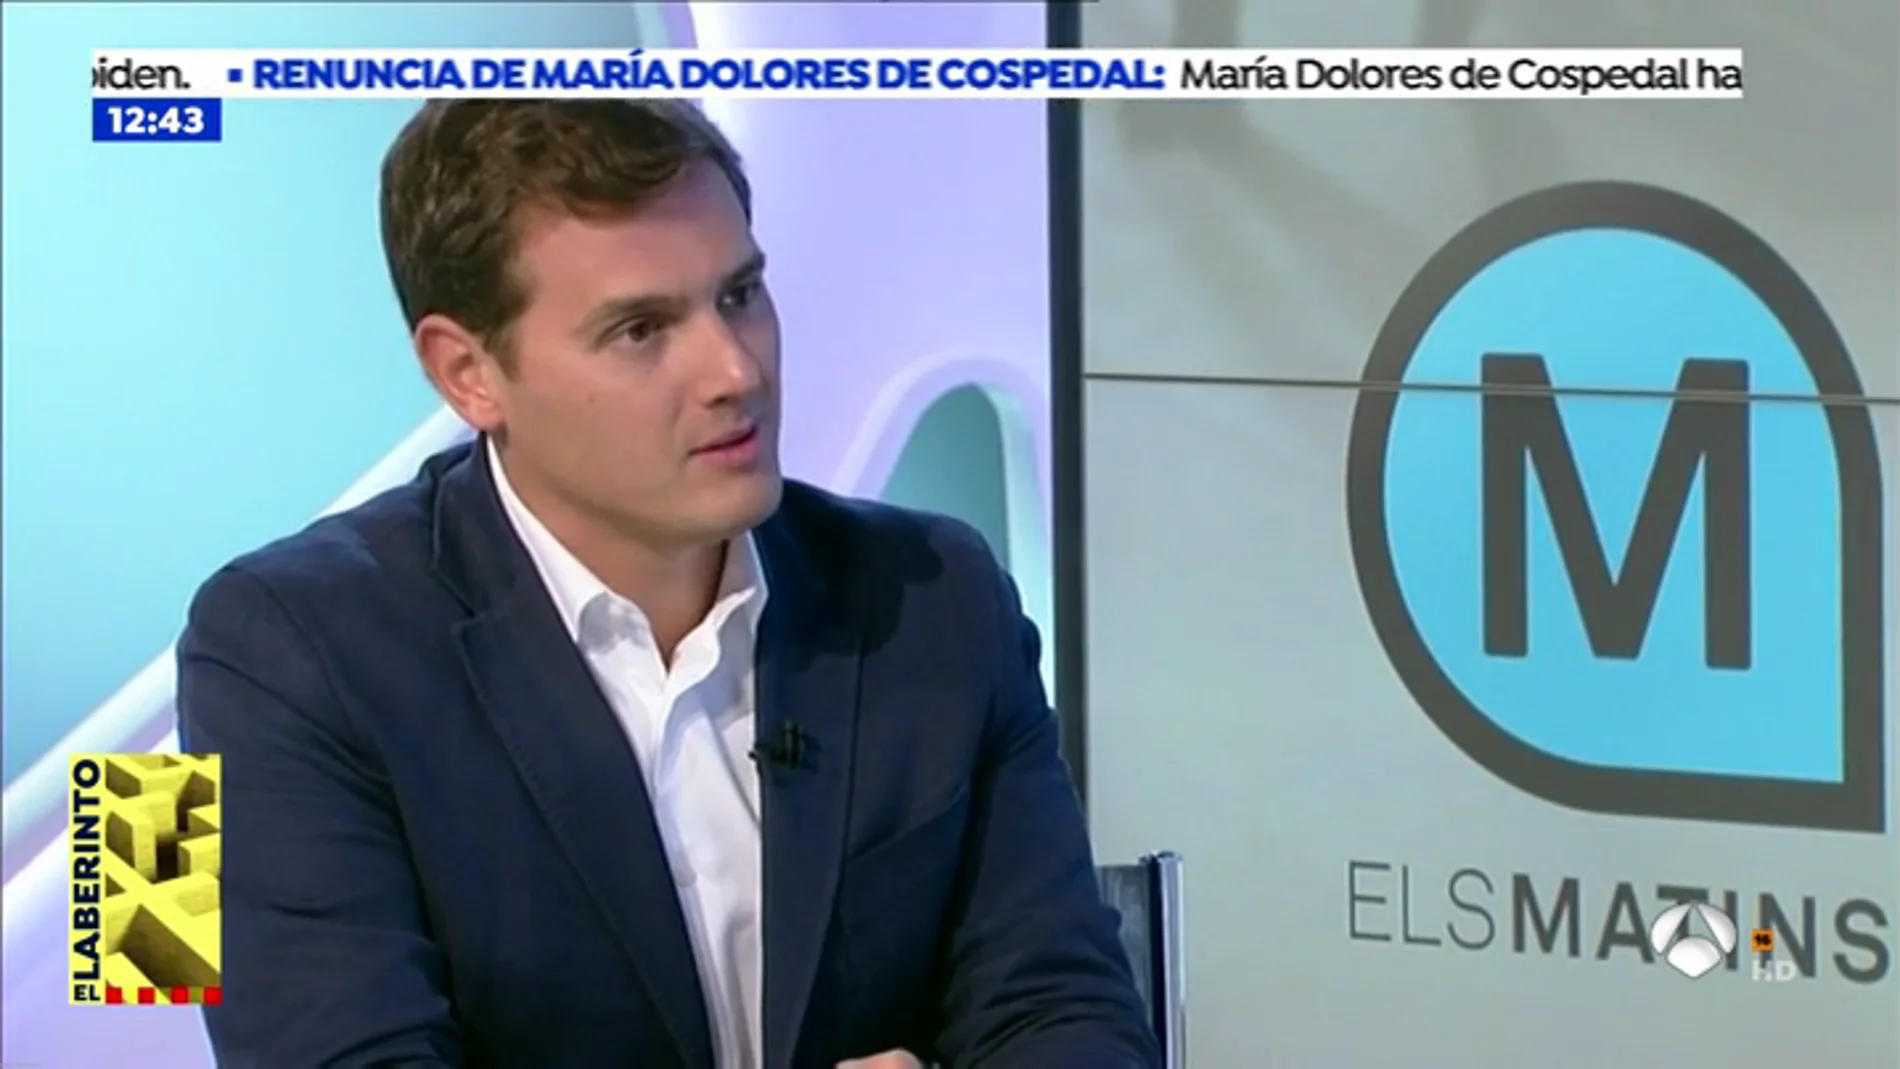 La bronca de Albert Rivera con la presentadora de TV3: "Sois un aparato de   propaganda separatista"